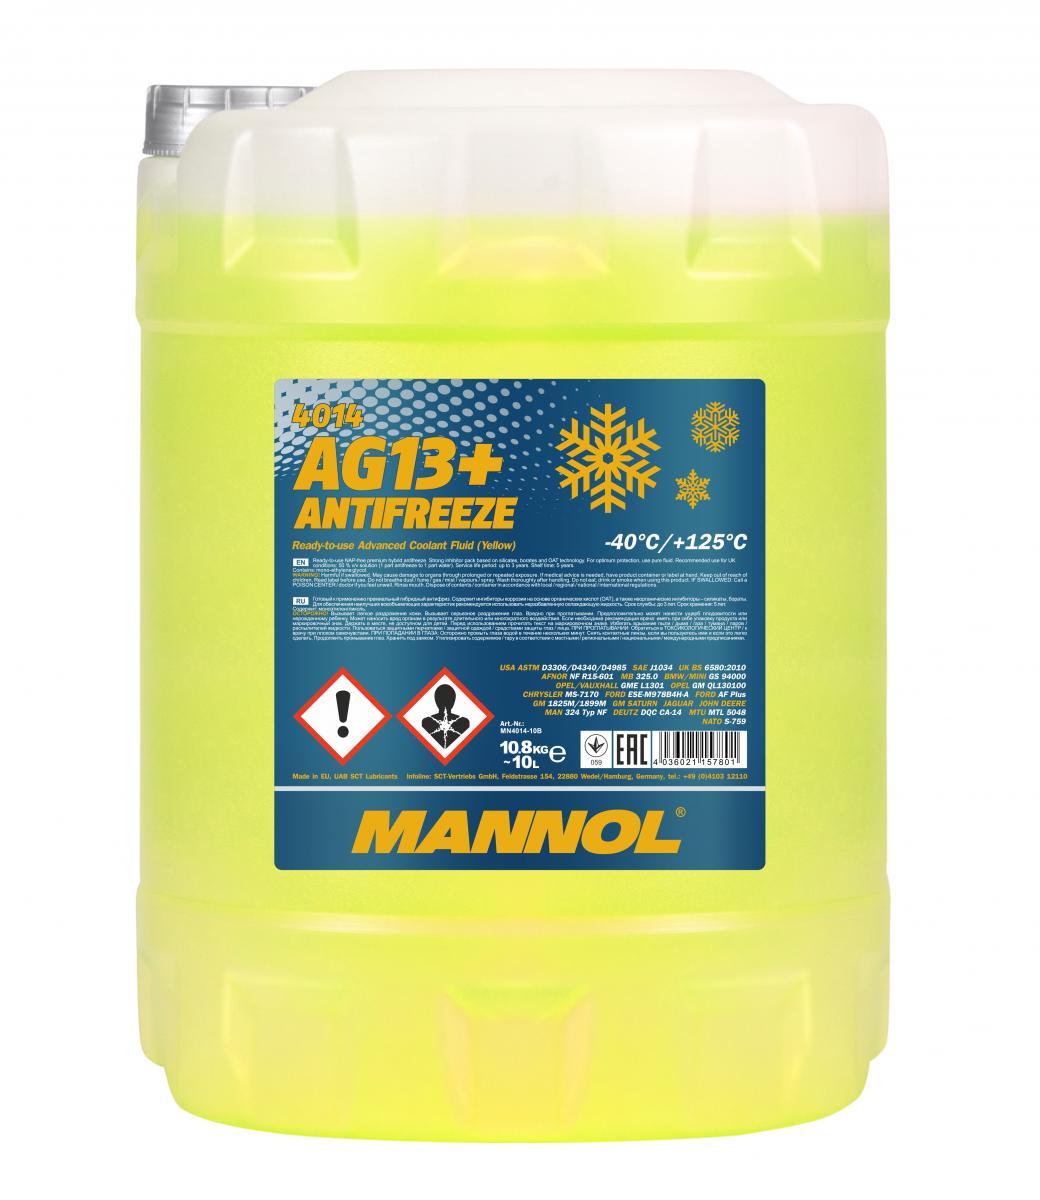 Mannol Kühlerfrostschutz Antifreeze AG13+ -40 Advanced Fertigmischung 10l  Kanister - Kühlerschutz GELB - Kühlerschutz - Pflege & Wartung 